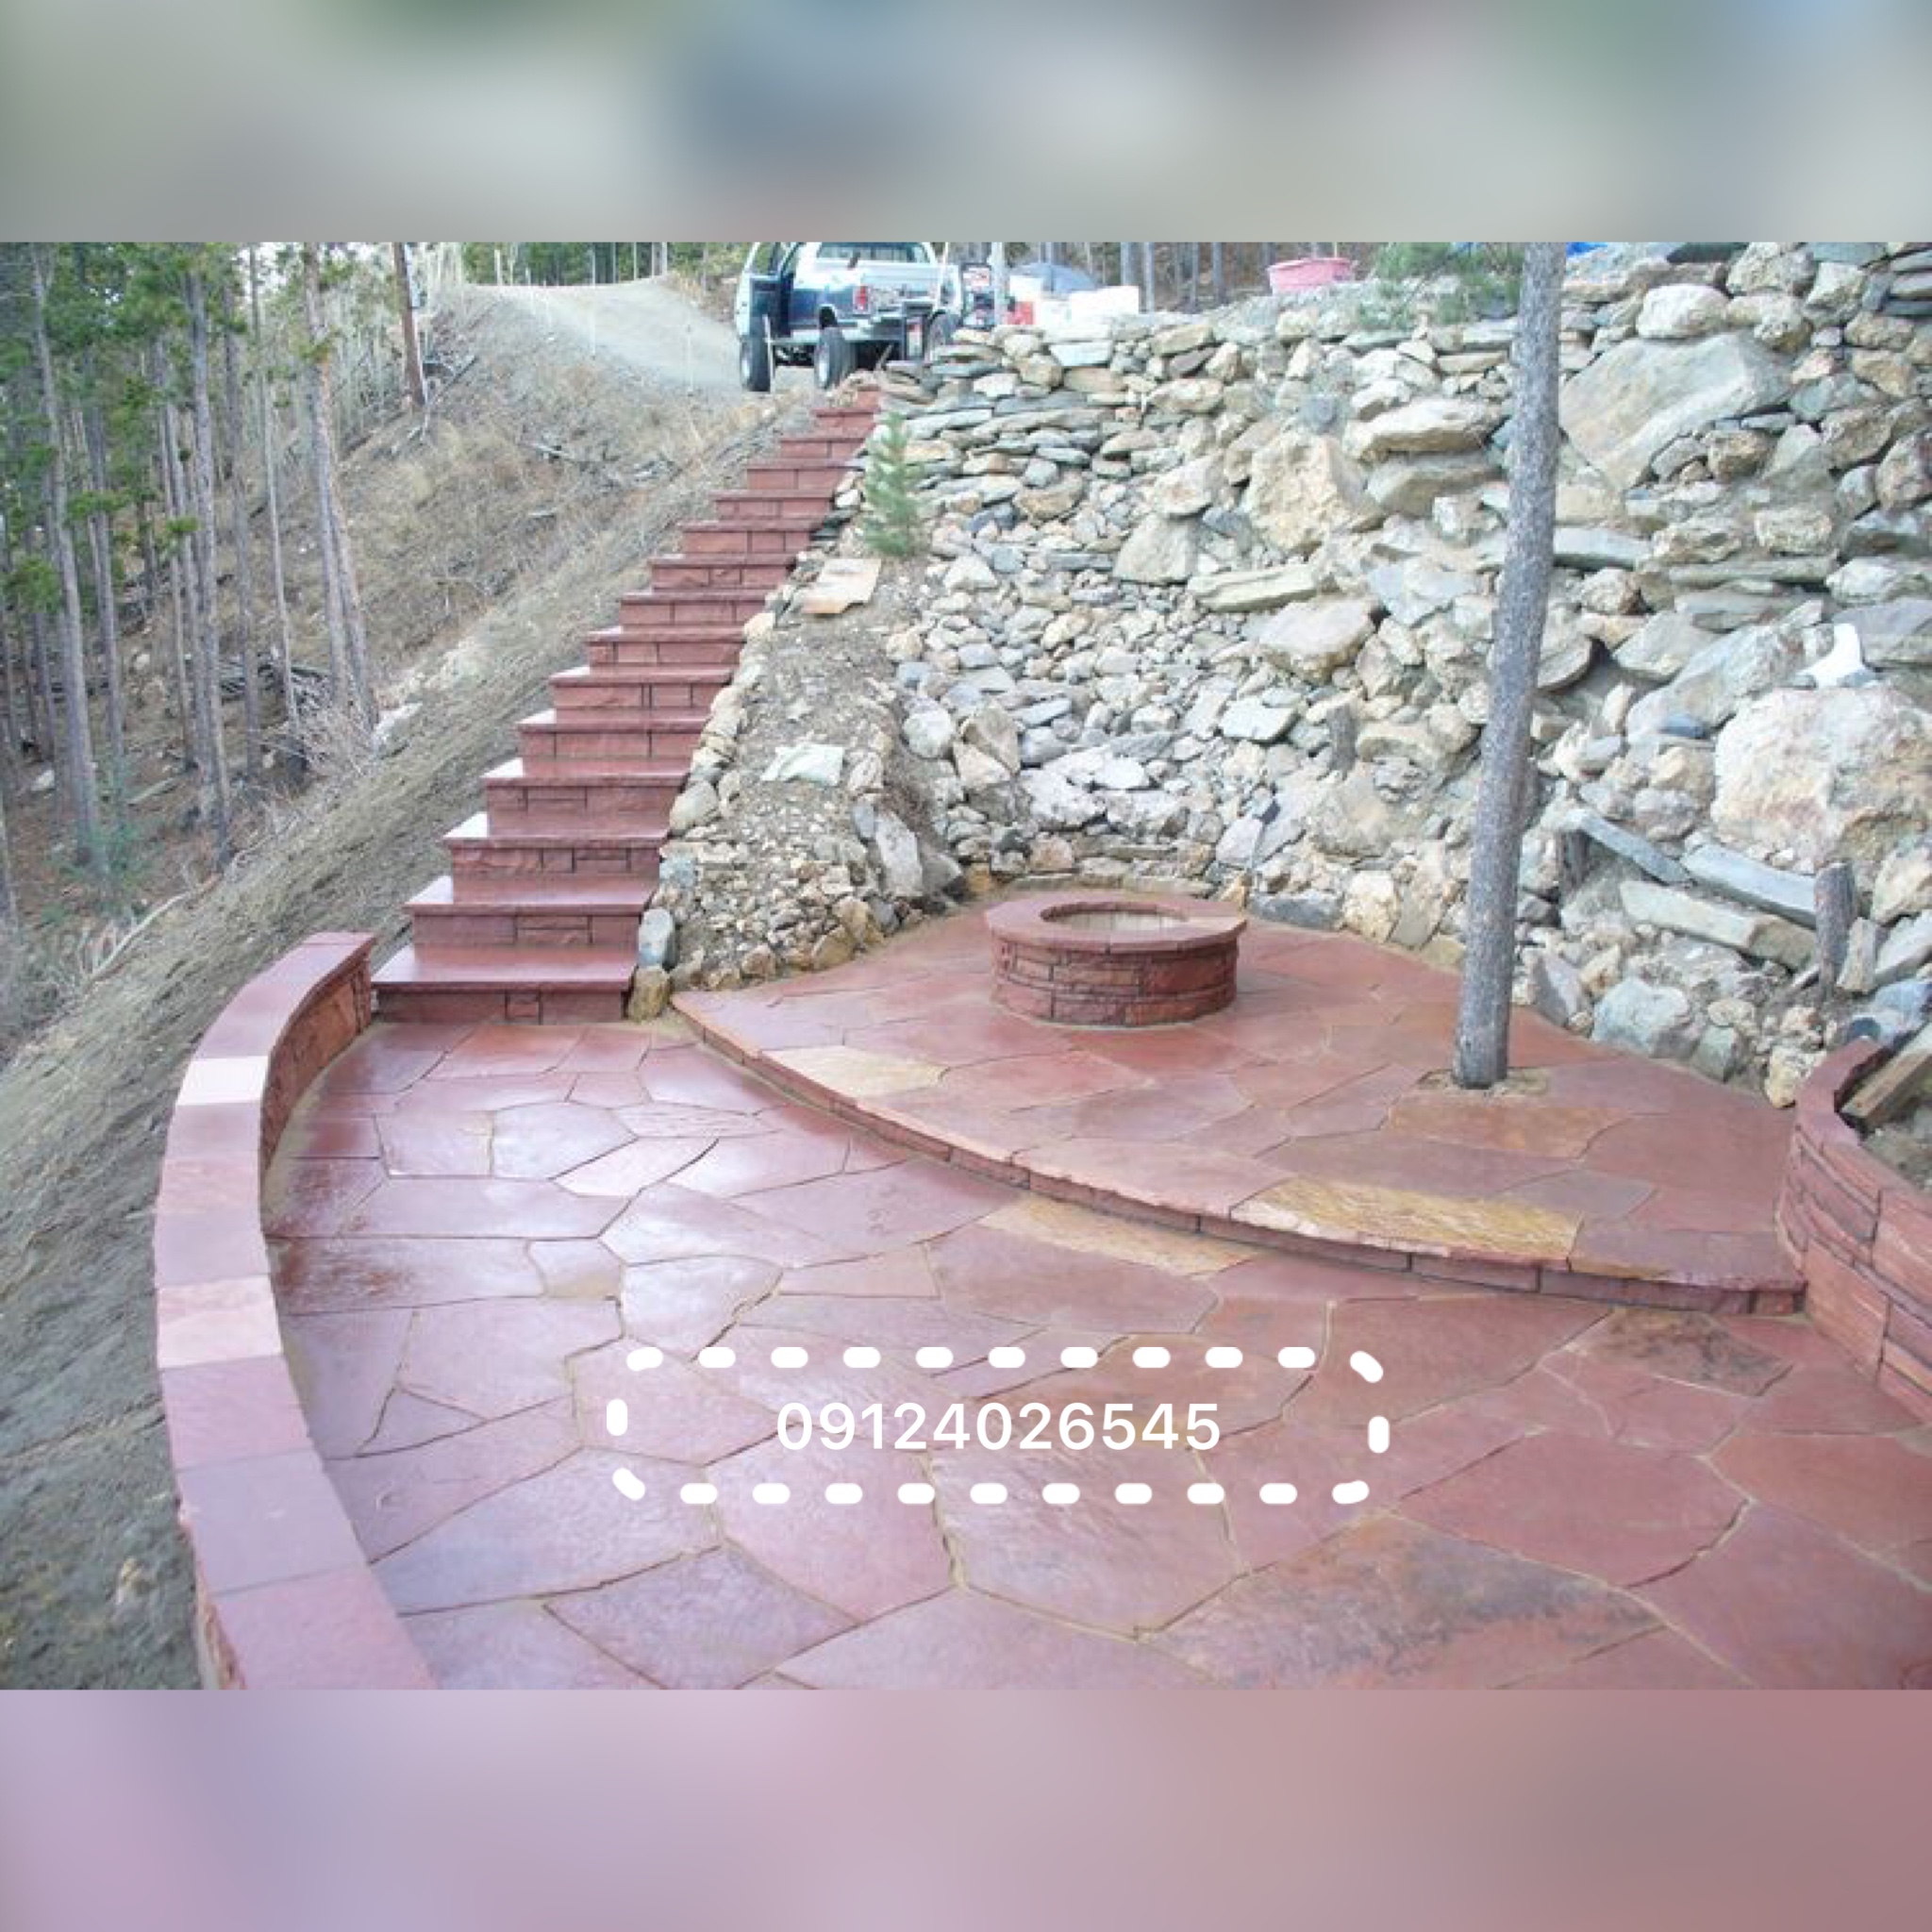 نصب سنگ لاشه و نصب سنگ مالون برای کف و دیوار پله باغچه محوطه سازی باغ ویلا